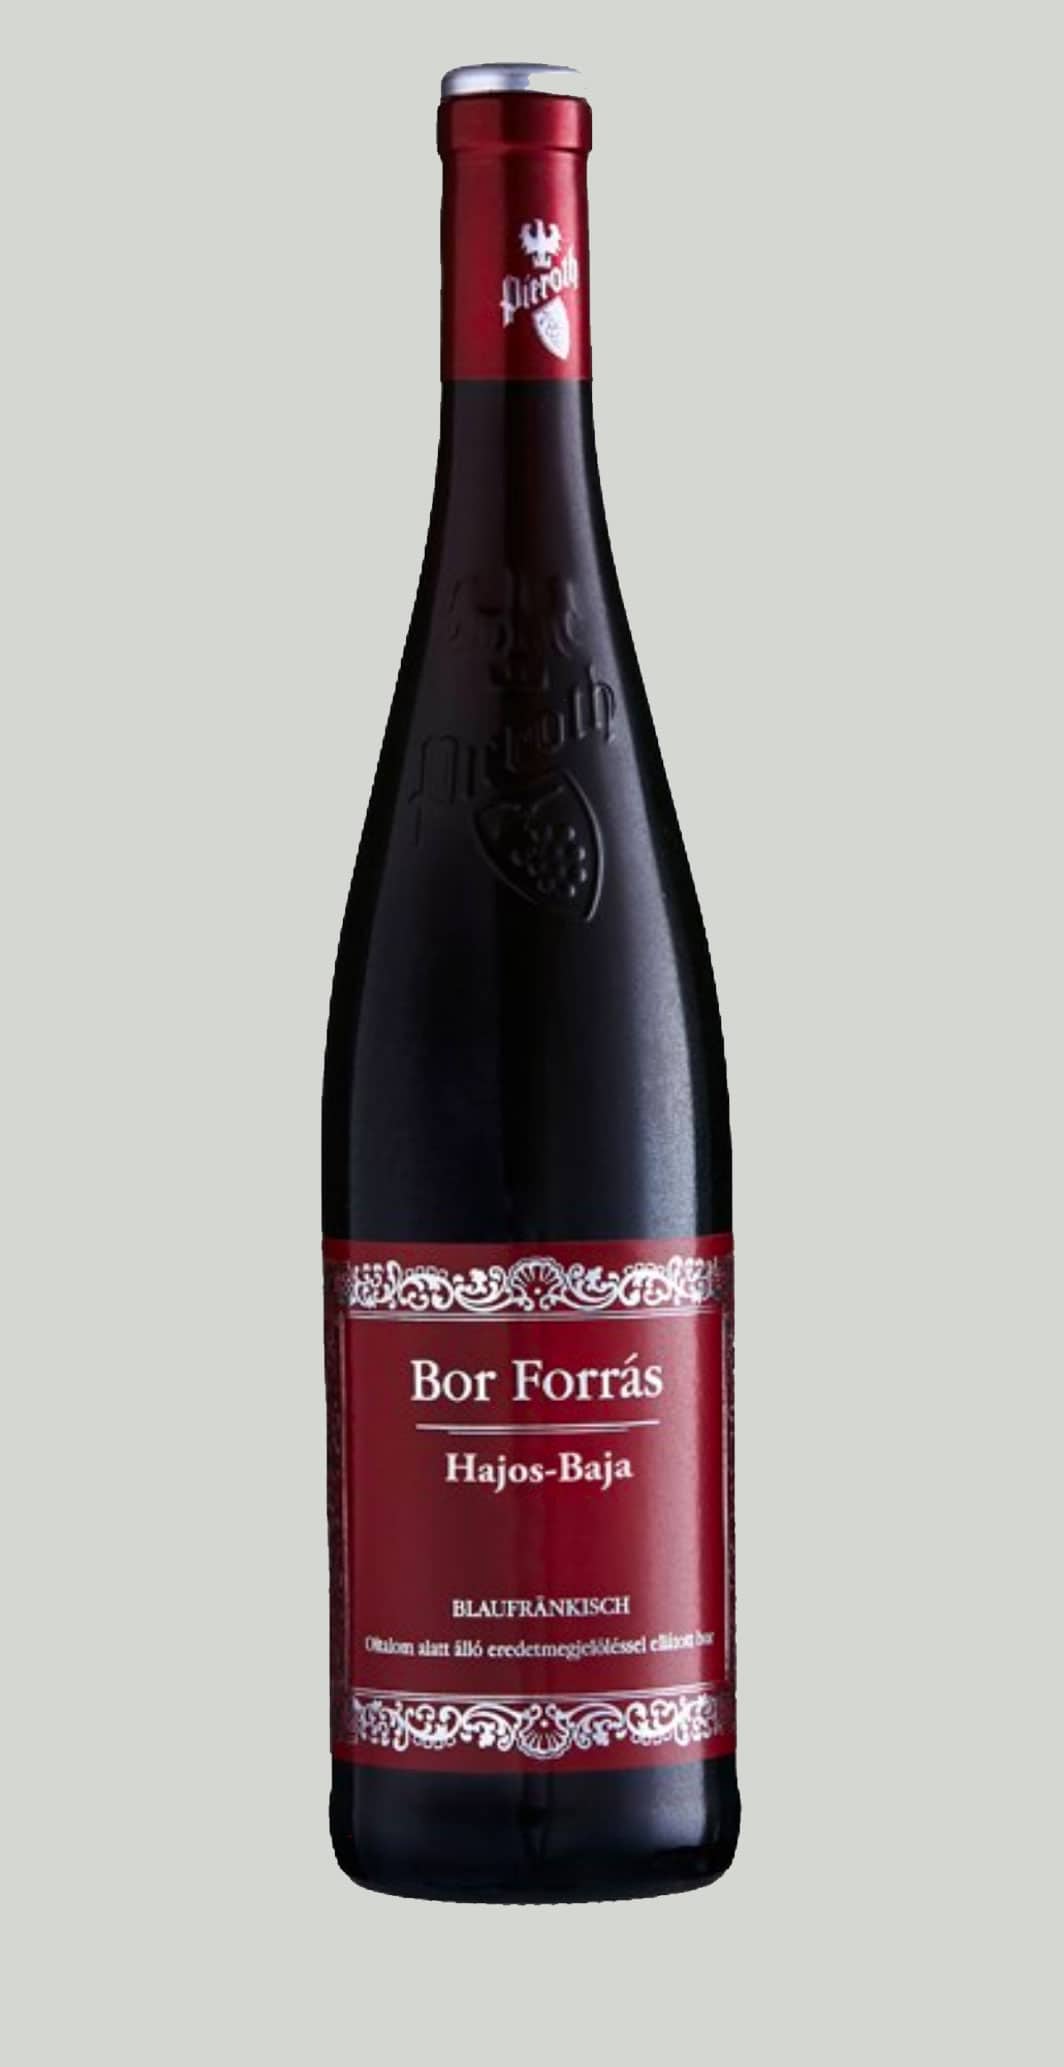 Bor Forras Wine House